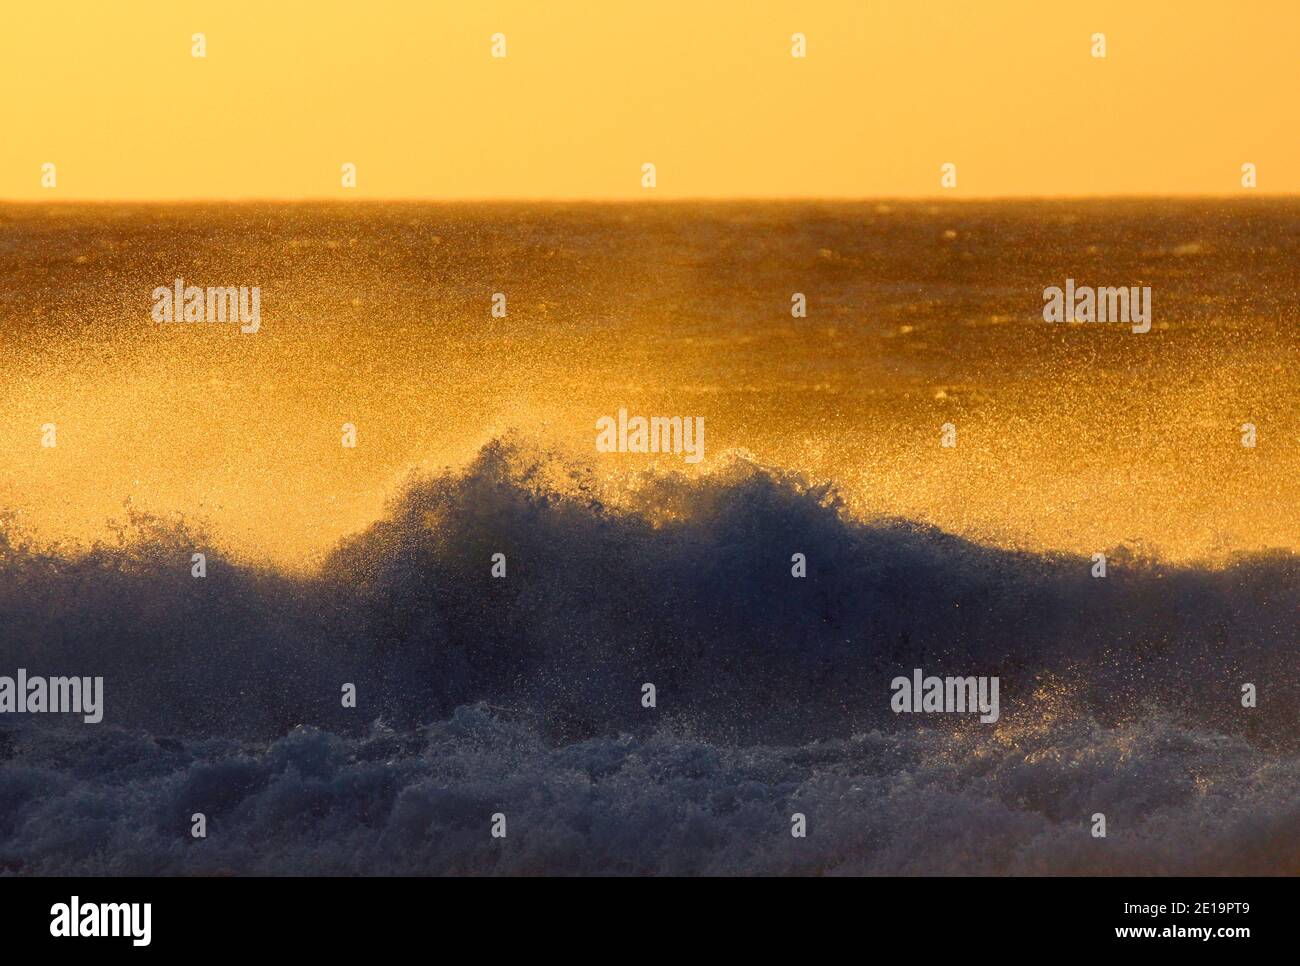 Surfez sur la côte du Cap en Afrique du Sud avec vue de la plage sur la mer avec la rupture vagues pendant l'heure d'or avant le coucher du soleil Banque D'Images